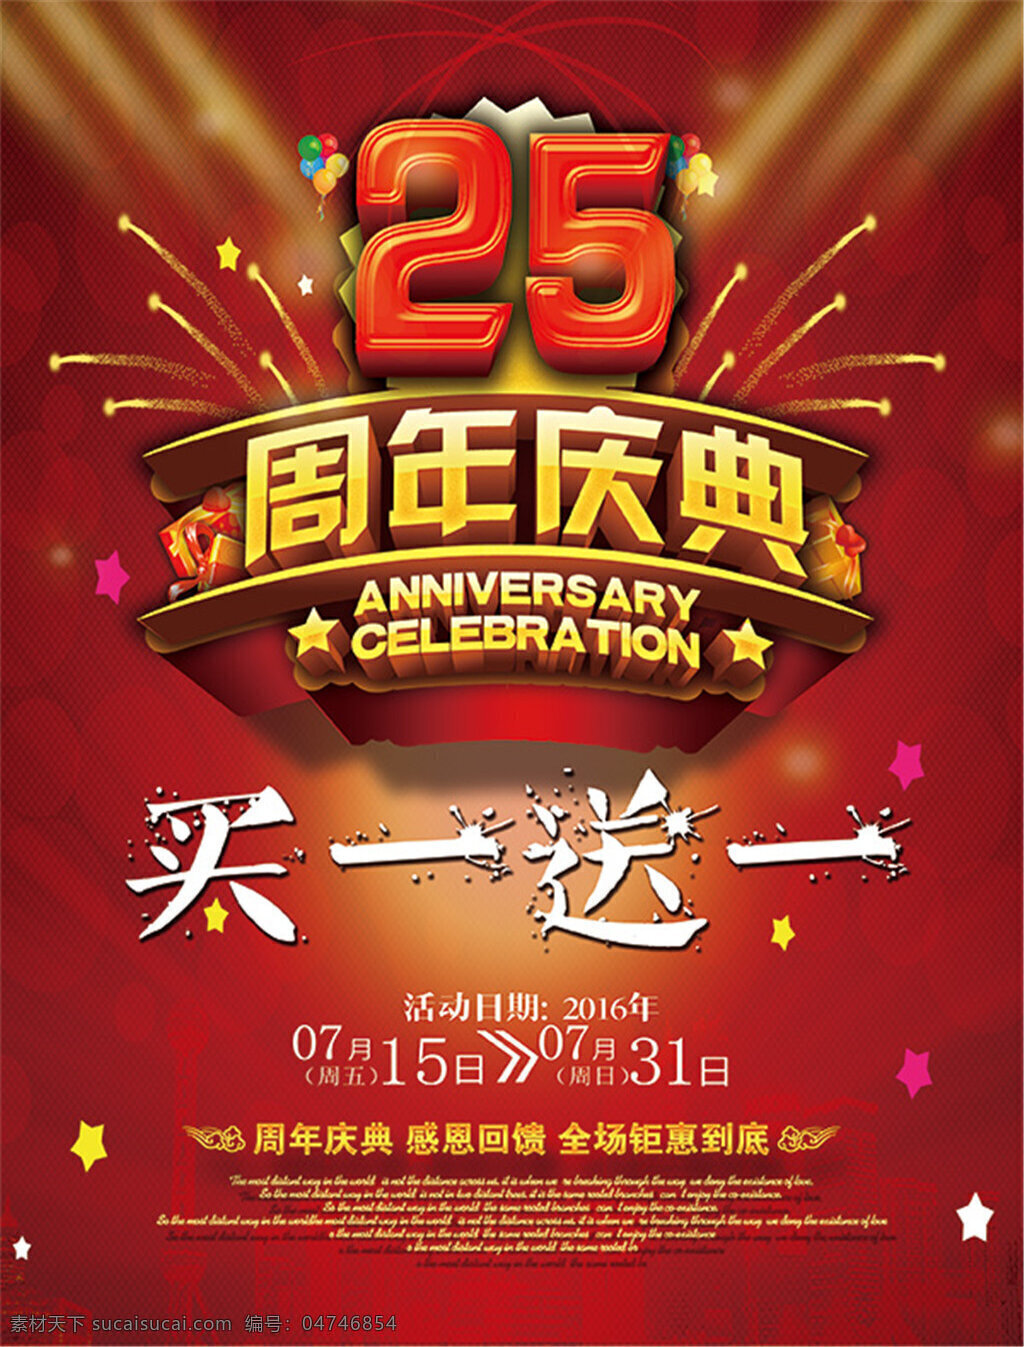 周年庆典 海报 周年庆 模板下载 25周年庆 25周年庆典 二 十 五 背景 红色